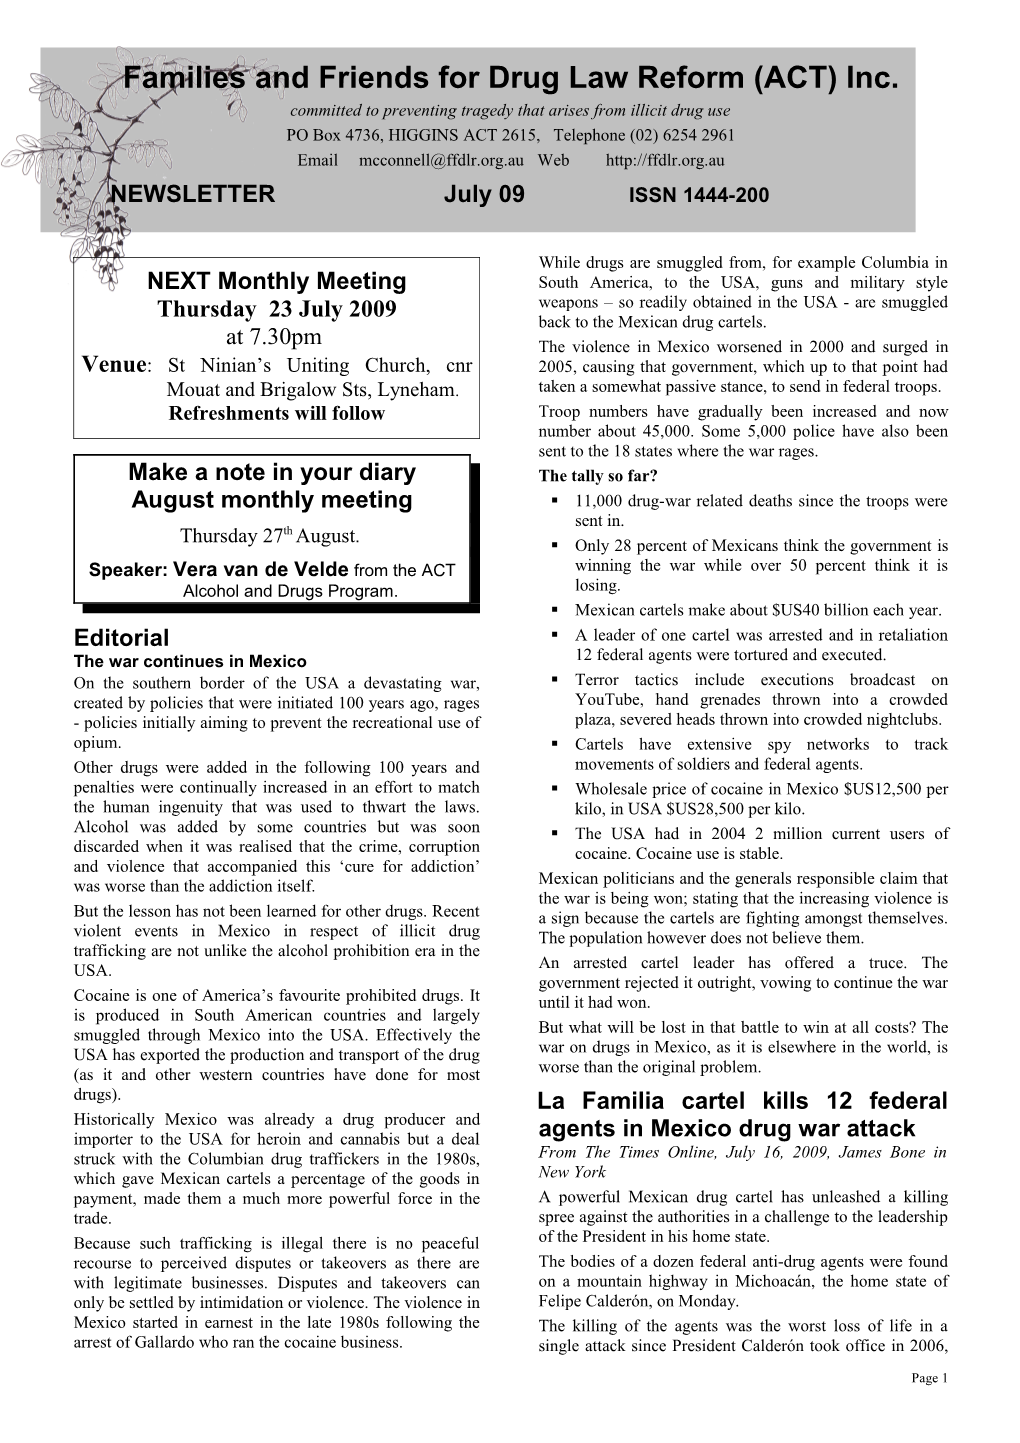 Newsletter June 1999